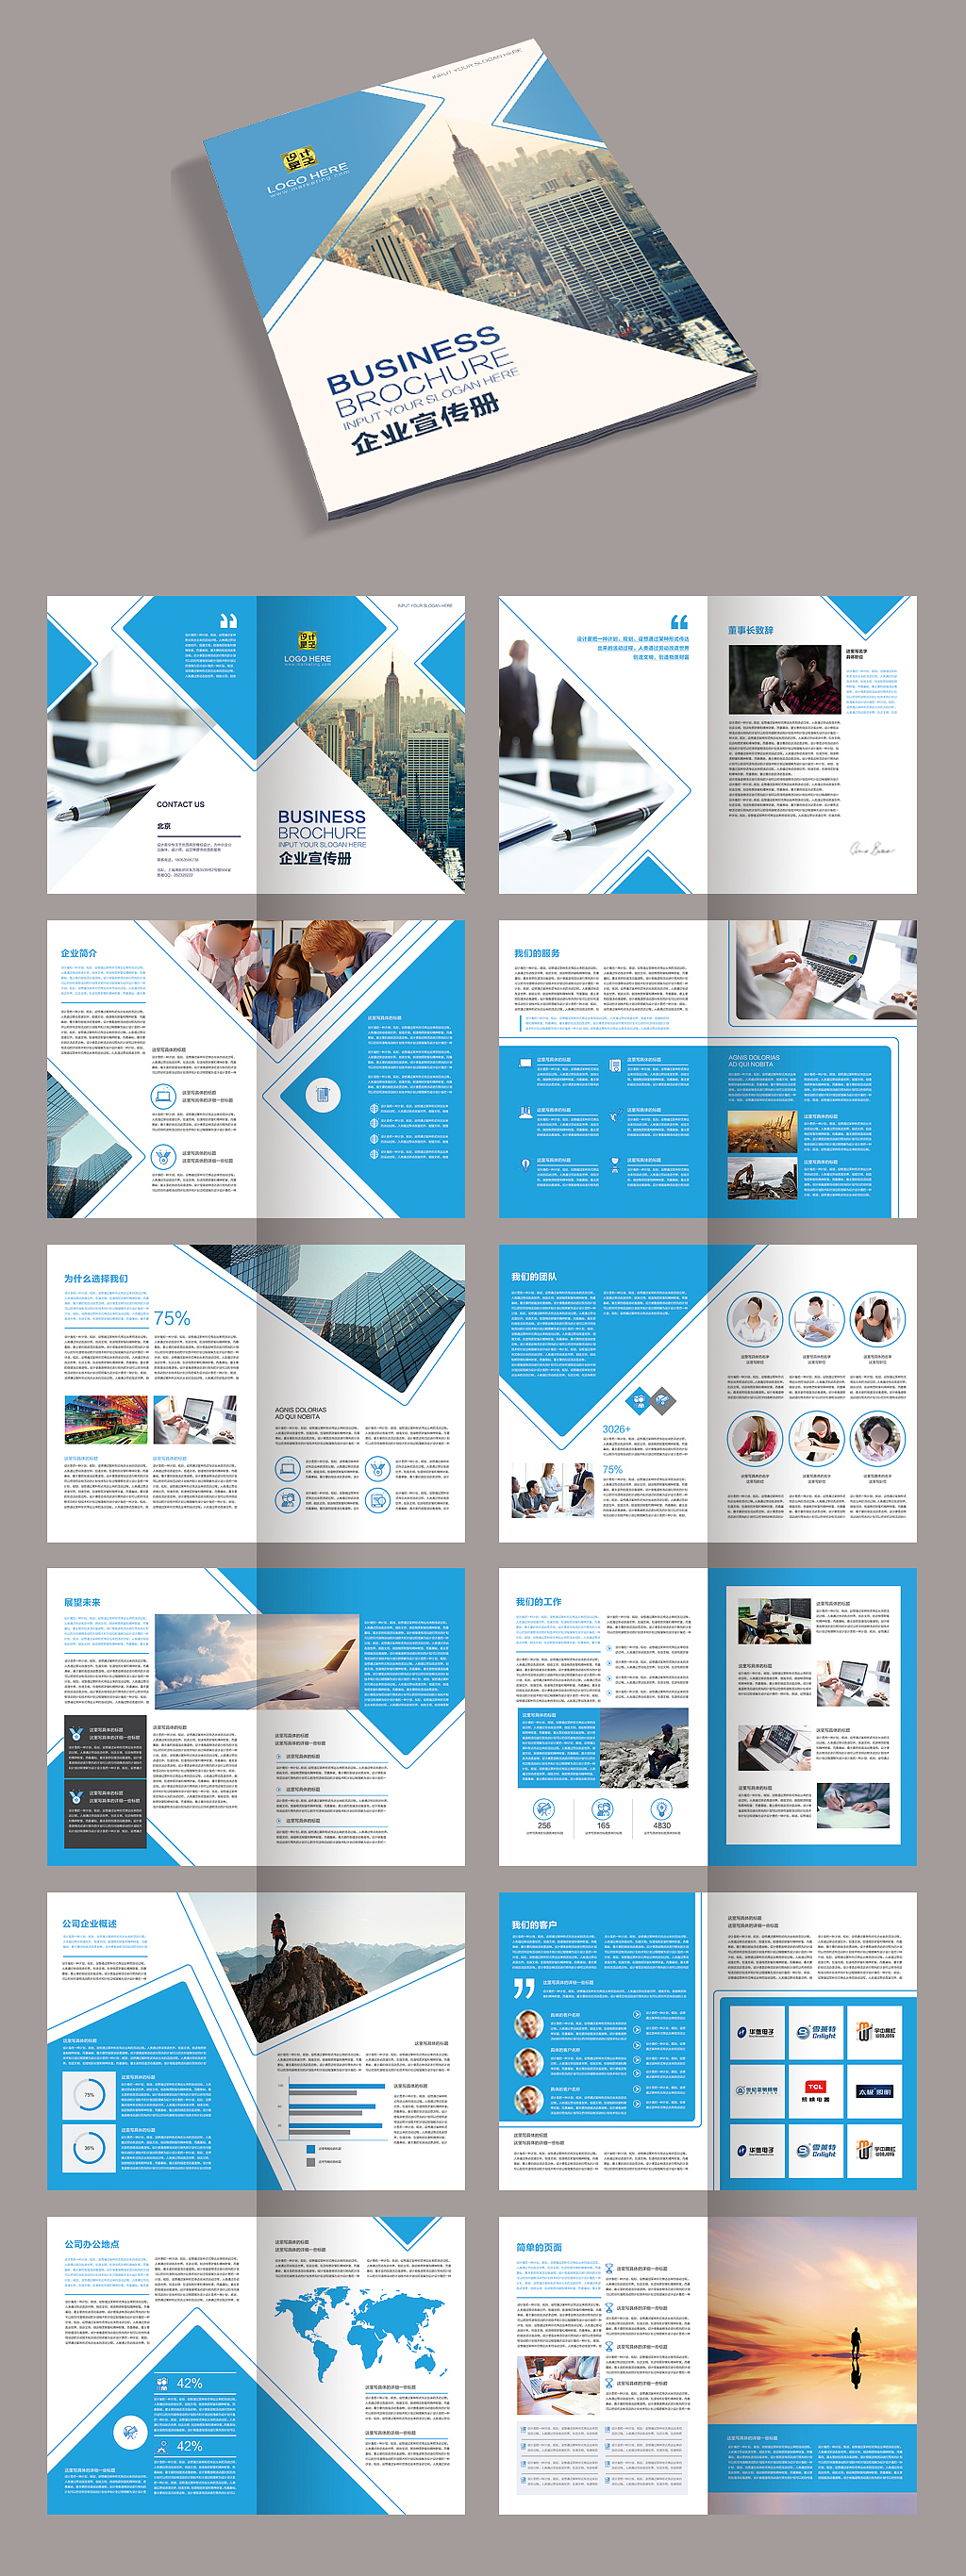 77套企业宣传册产品画册杂志排版作品集PSD设计模板素材源文件